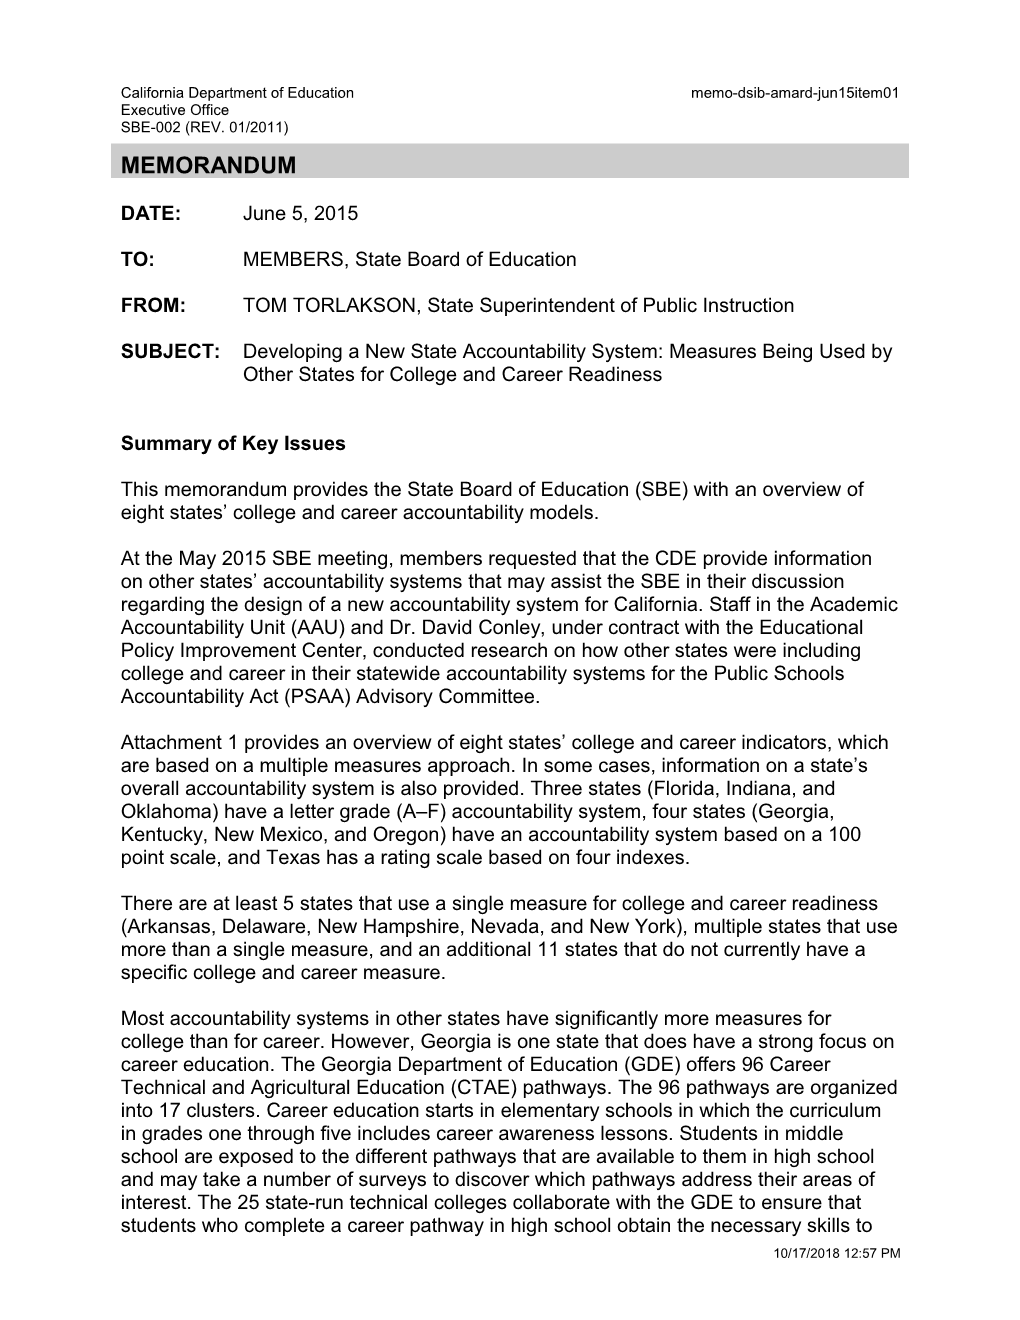 June 2015 Memorandum AMARD Item 01 - Information Memorandum (CA State Board of Education)